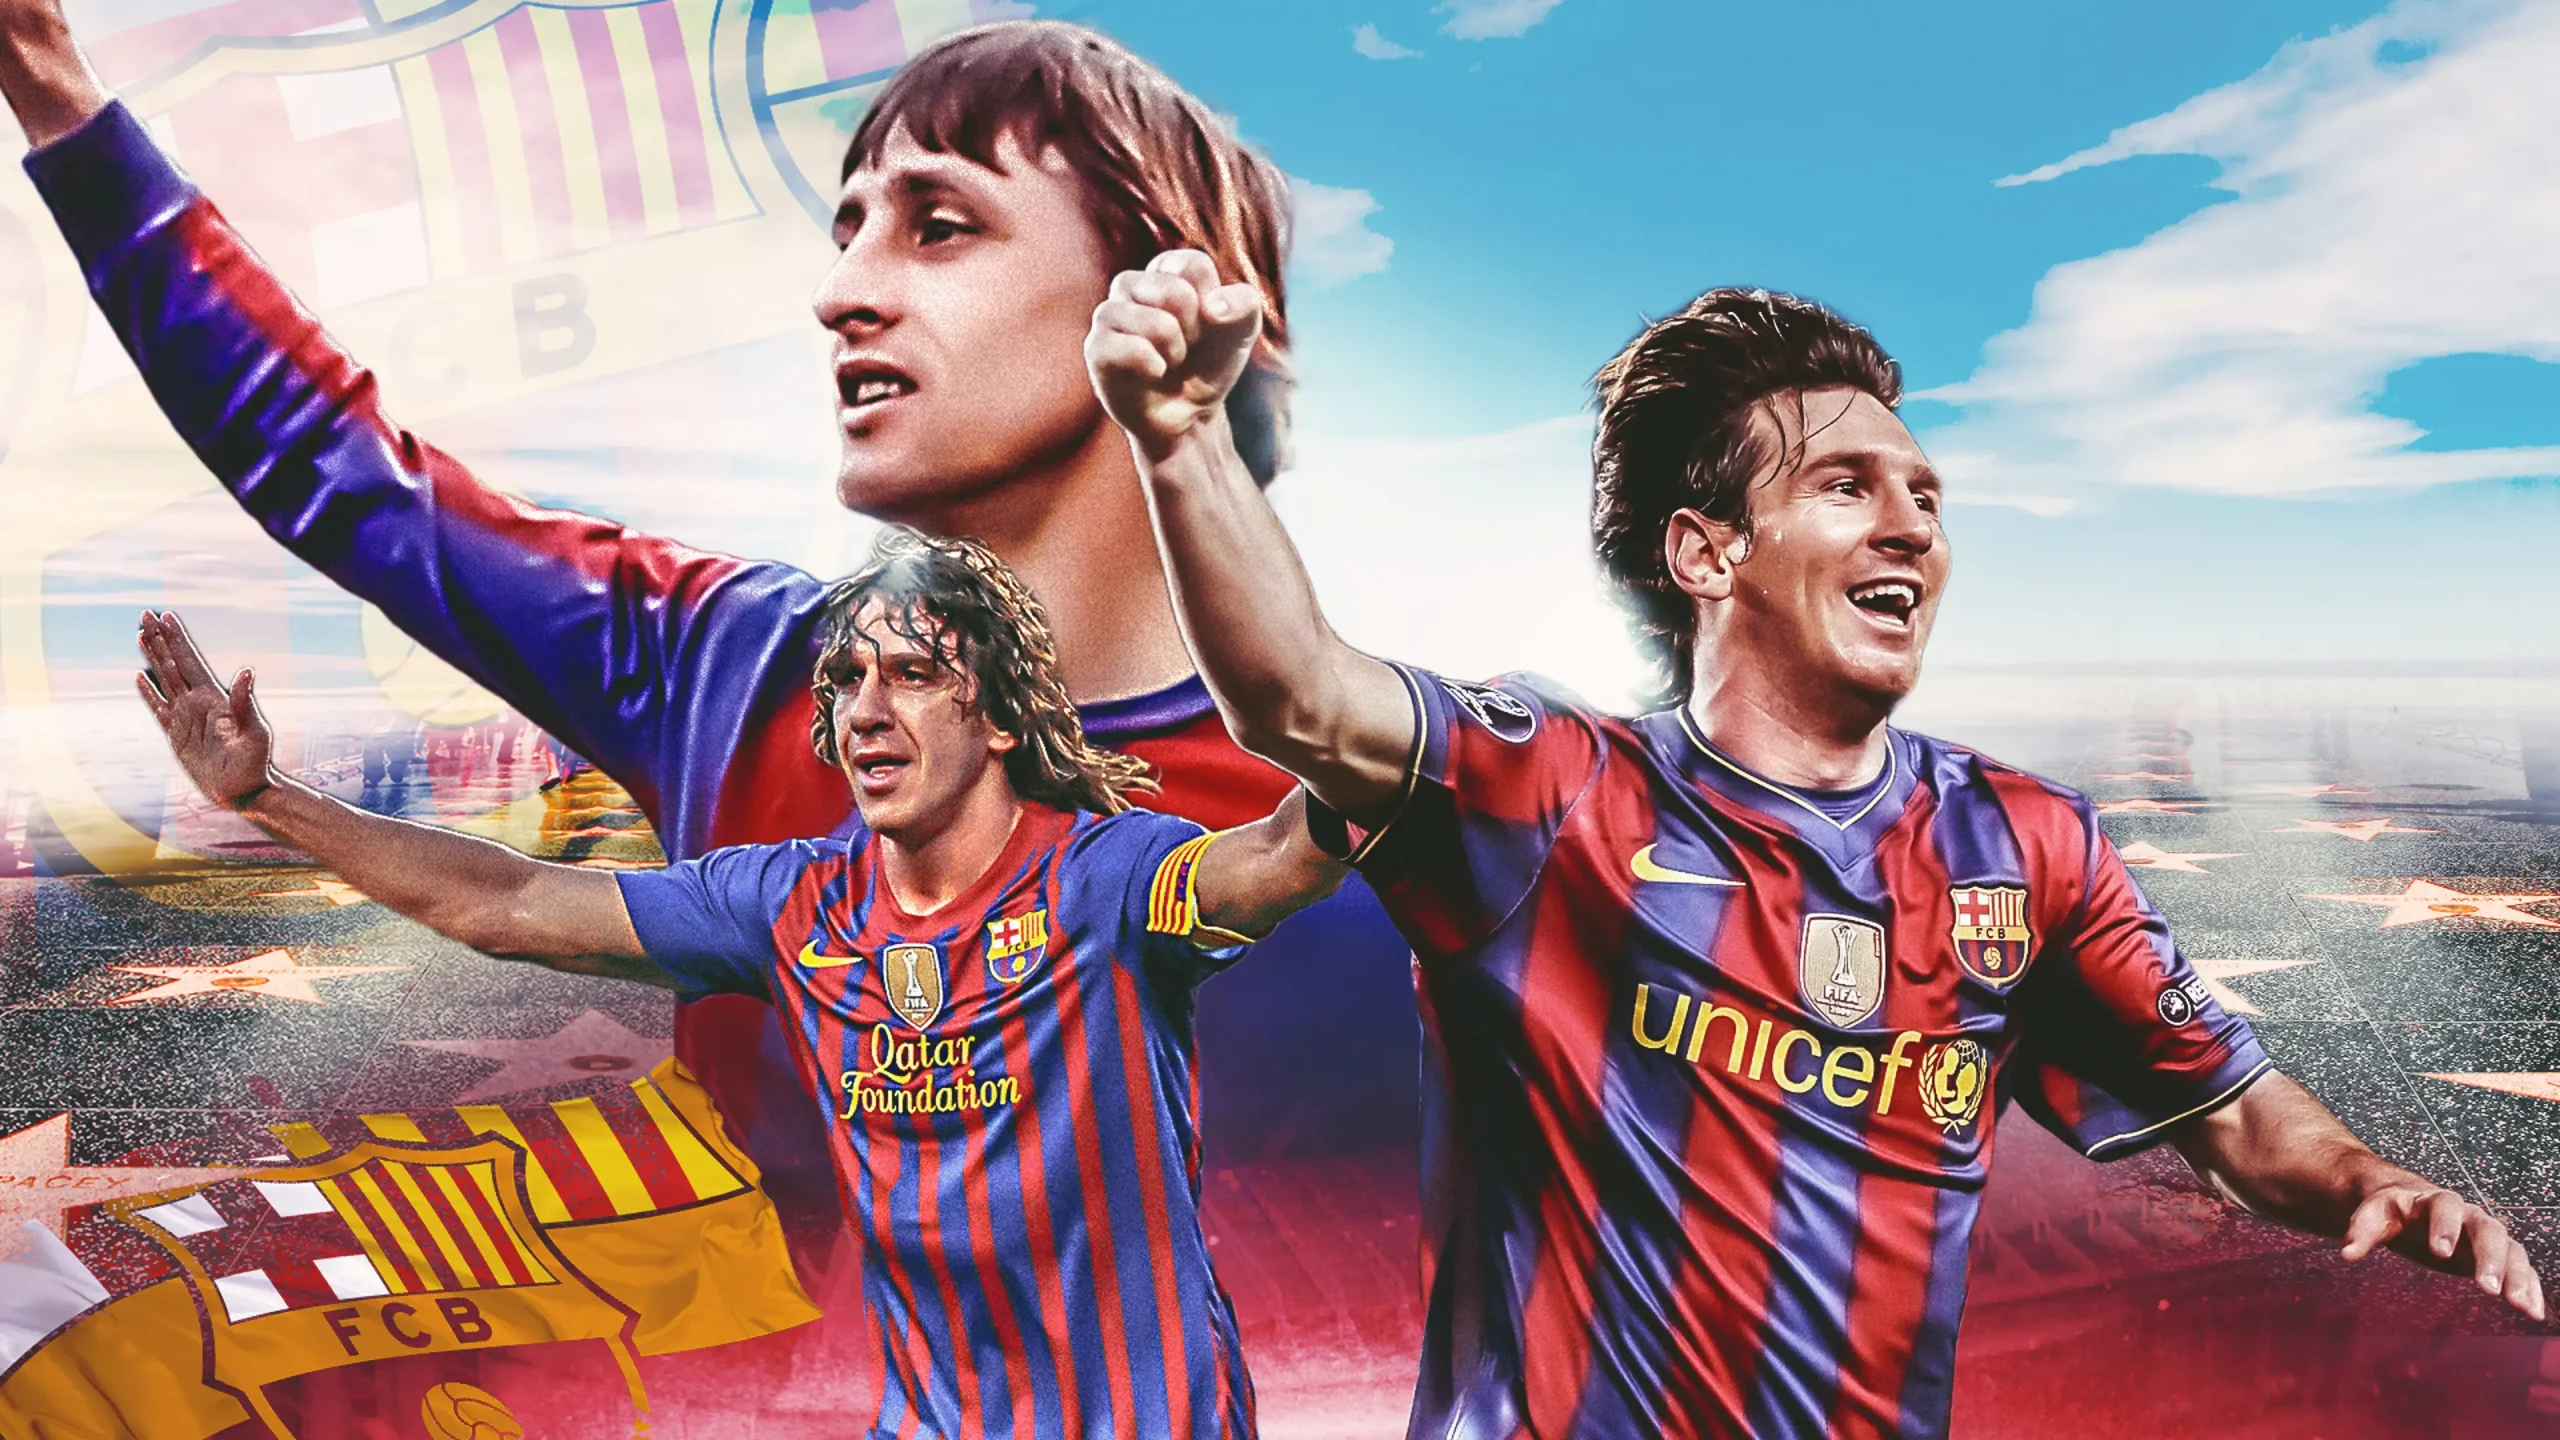 Tổng hợp hình ảnh Lionel Messi chân thực, đẹp mắt nhất